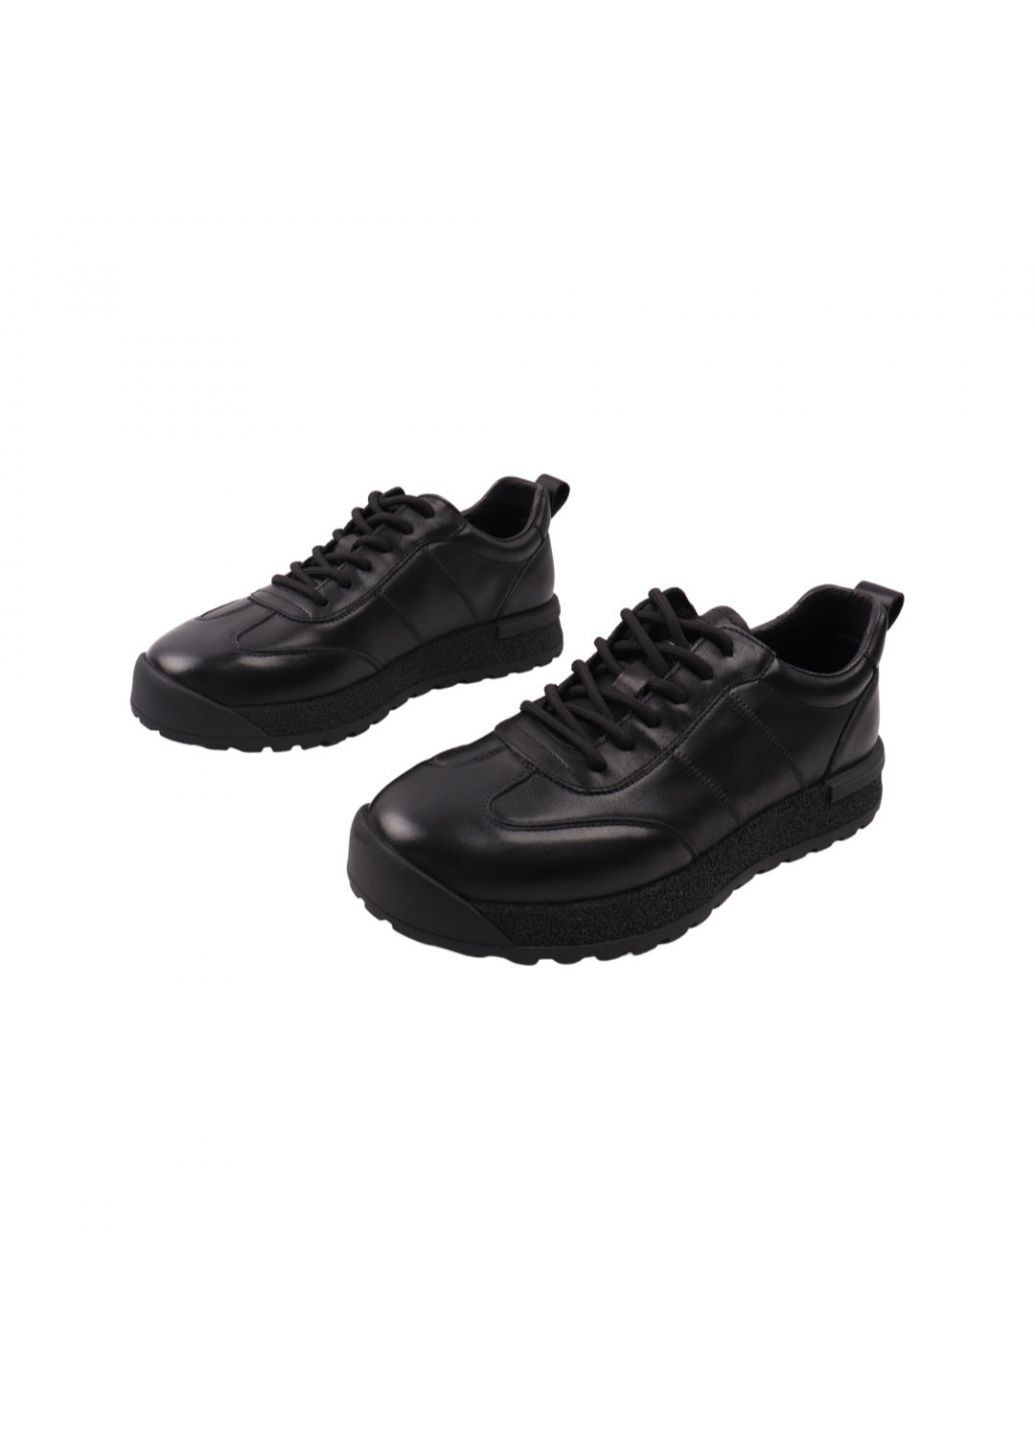 Чорні кросівки чоловічі чорні натуральна шкіра Lifexpert 1086-22/23DTC